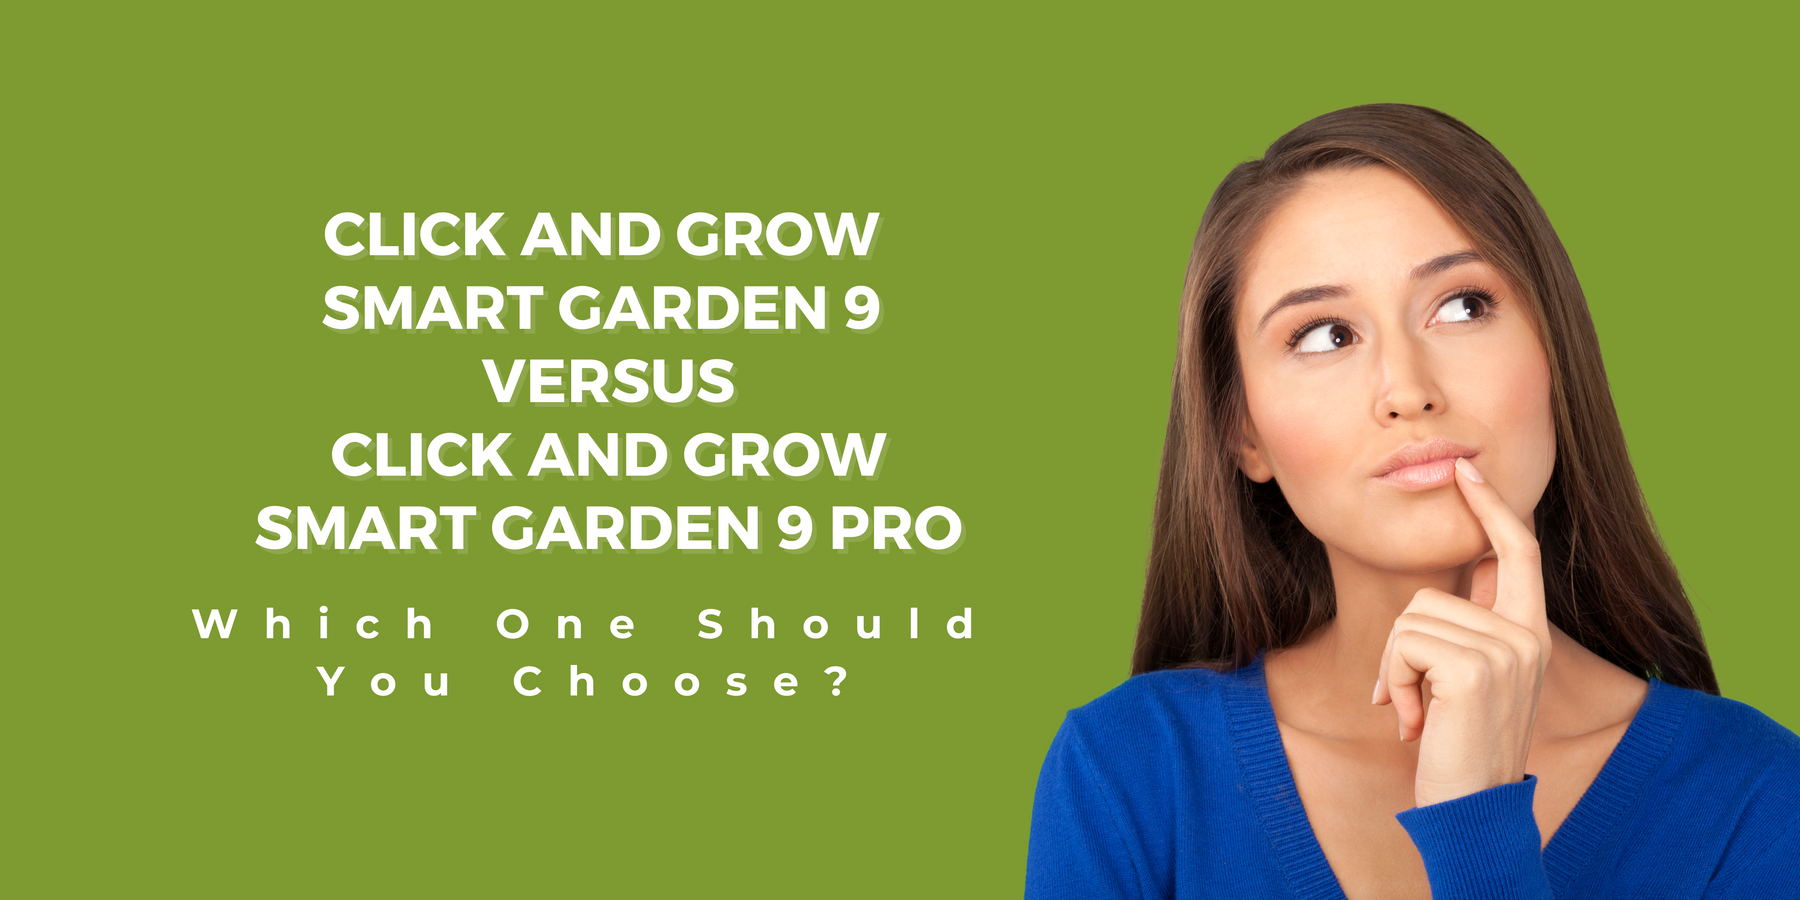 Click and Grow Smart Garden 9 versus Click and Grow Smart Garden 9 Pro Blog Post